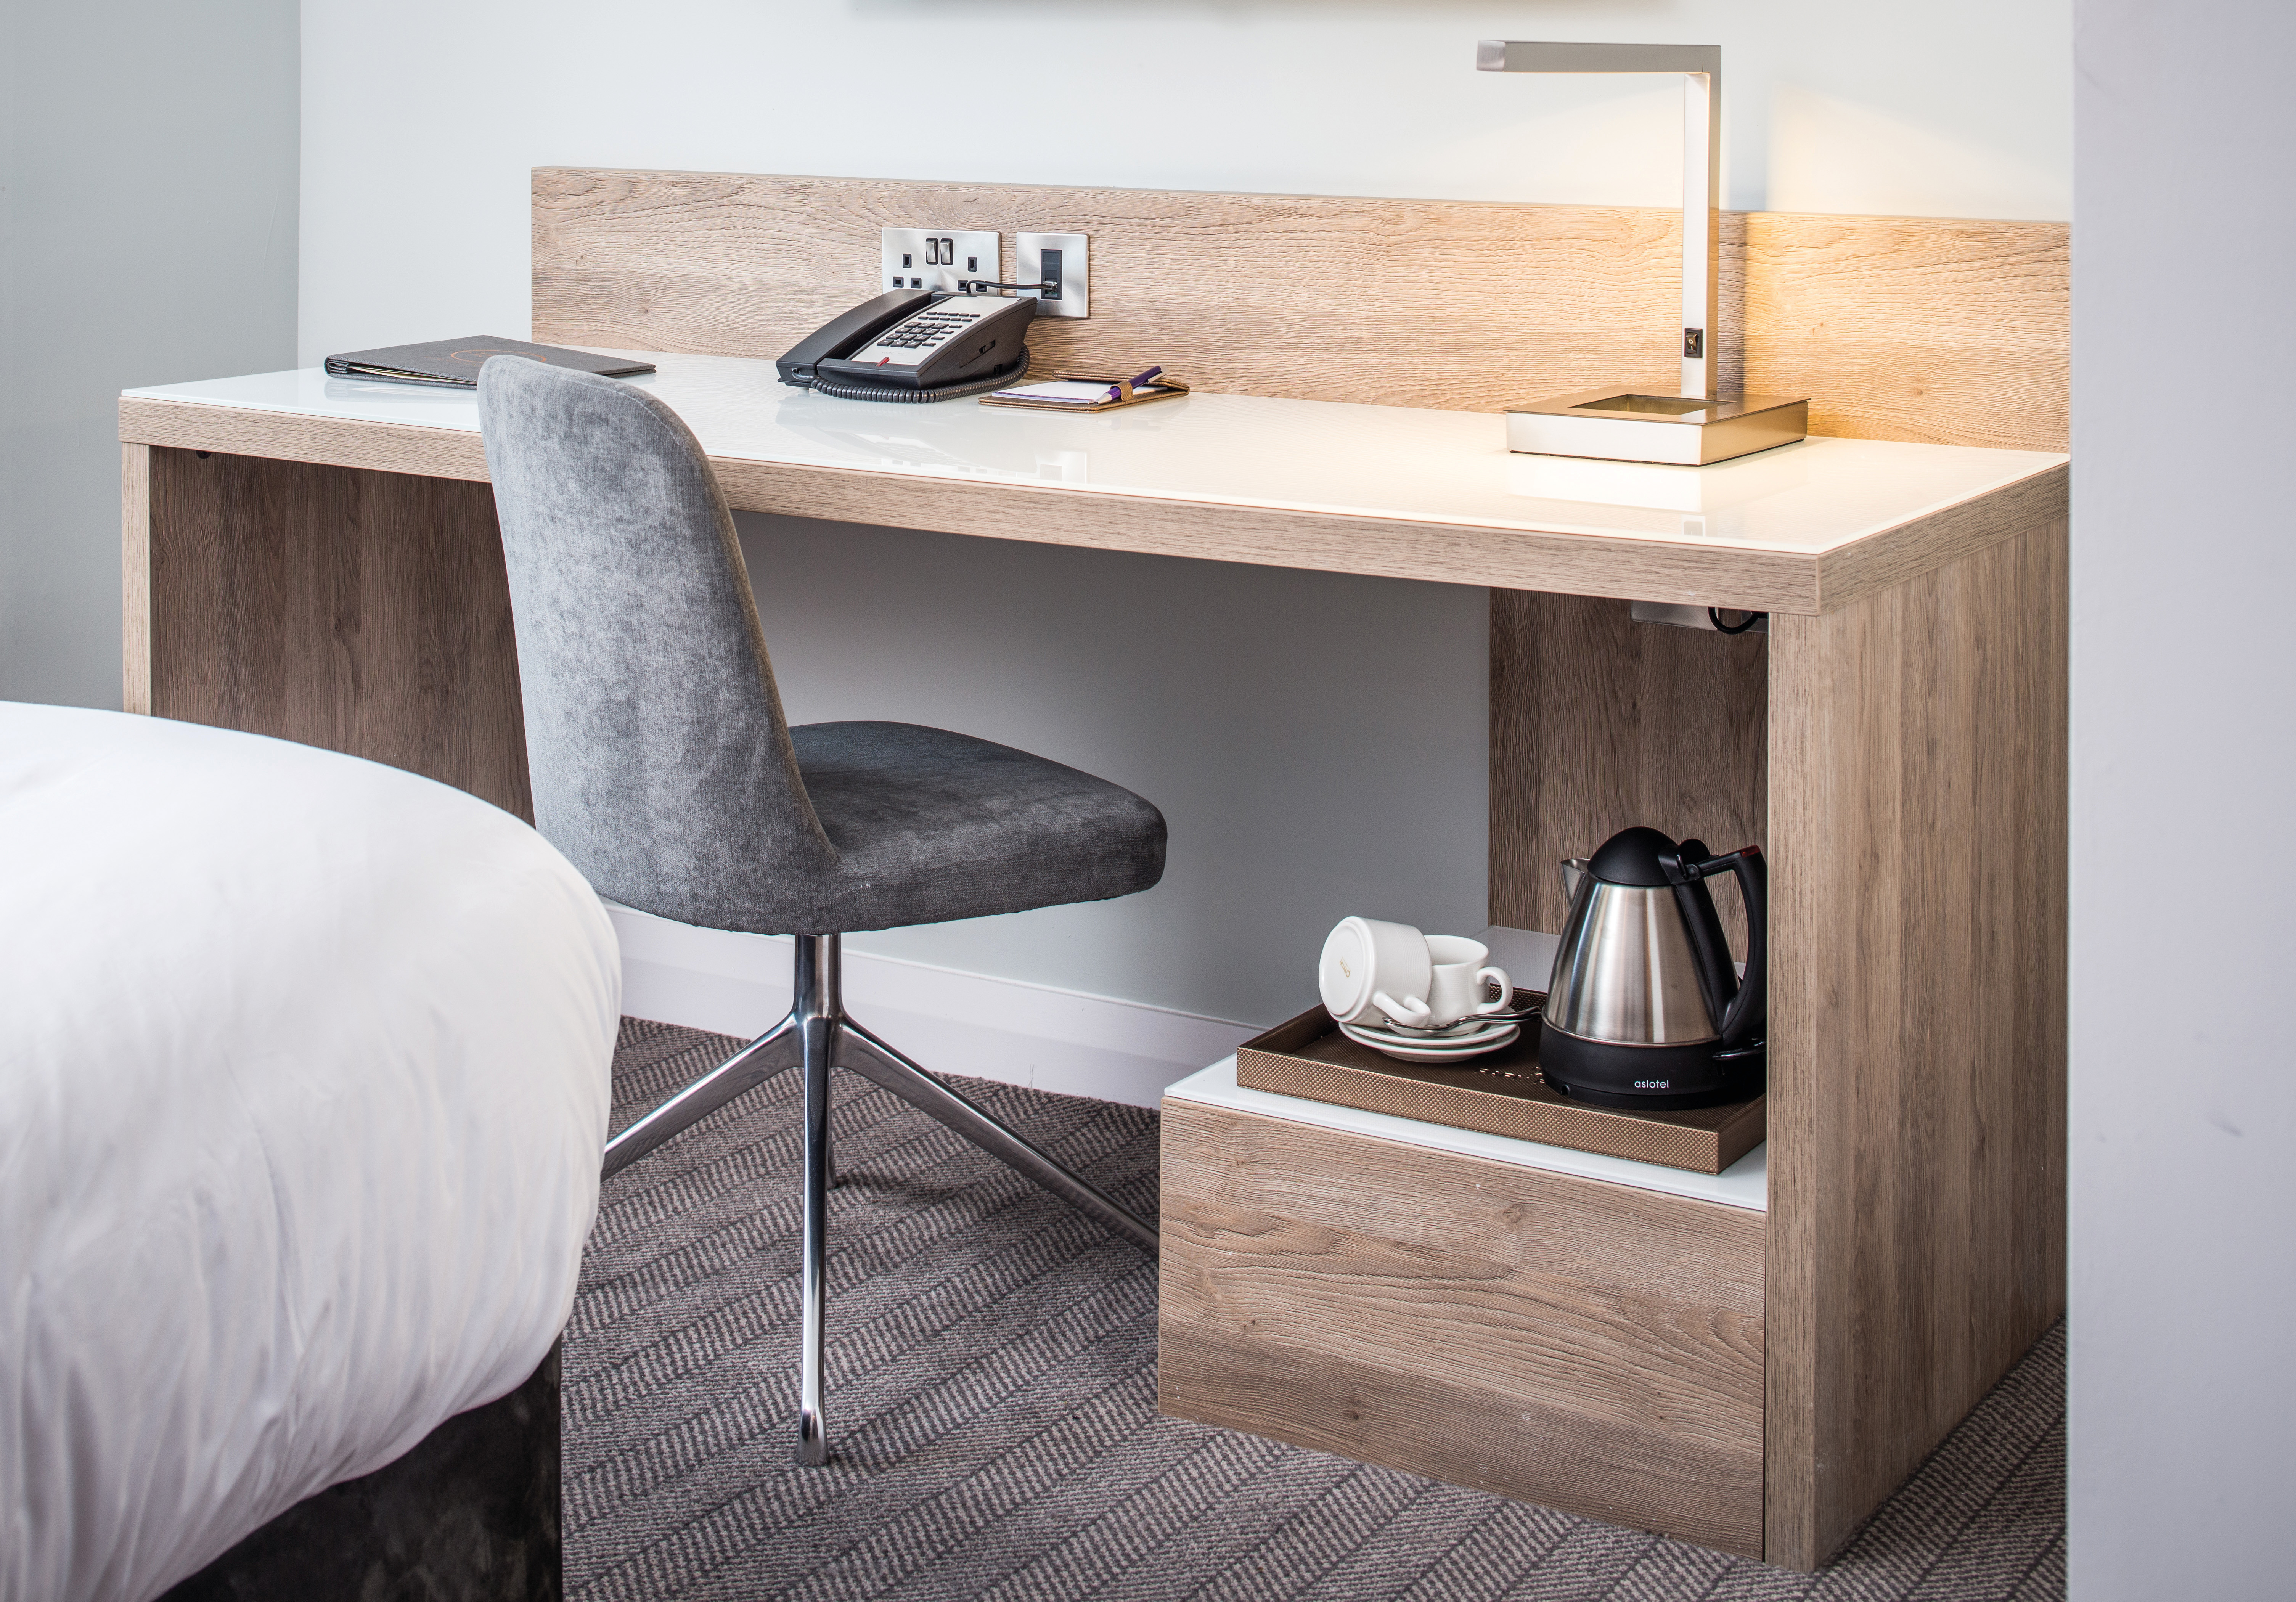 Das verwendete Dekor ist ein Blickfang und zeigt den neuesten Trends im Hotelmöbel-Design.